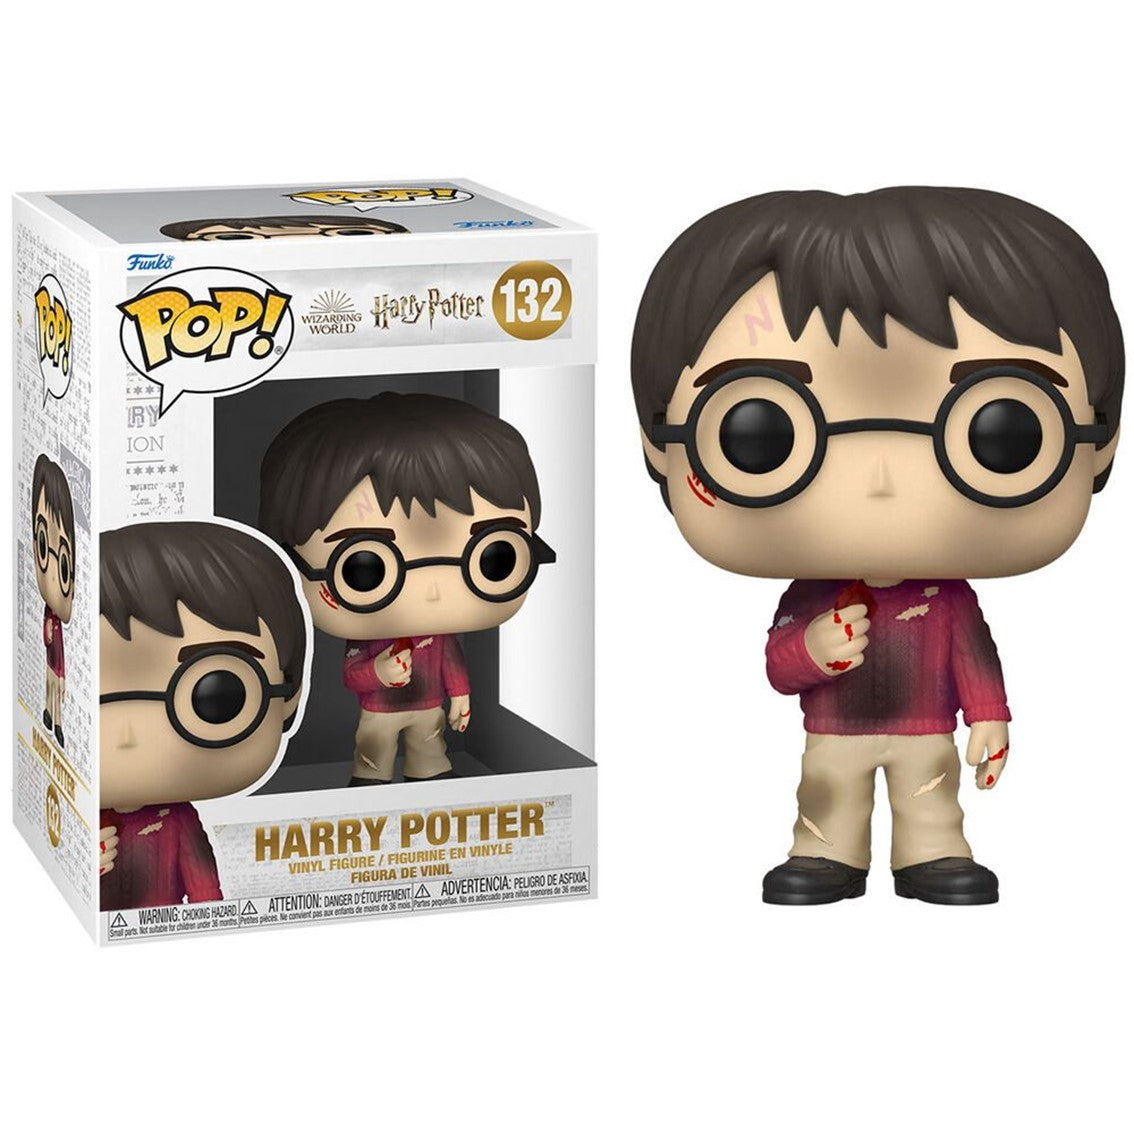 FUNKO POP! Harry Potter - Harry Potter con la piedra filosofal 132